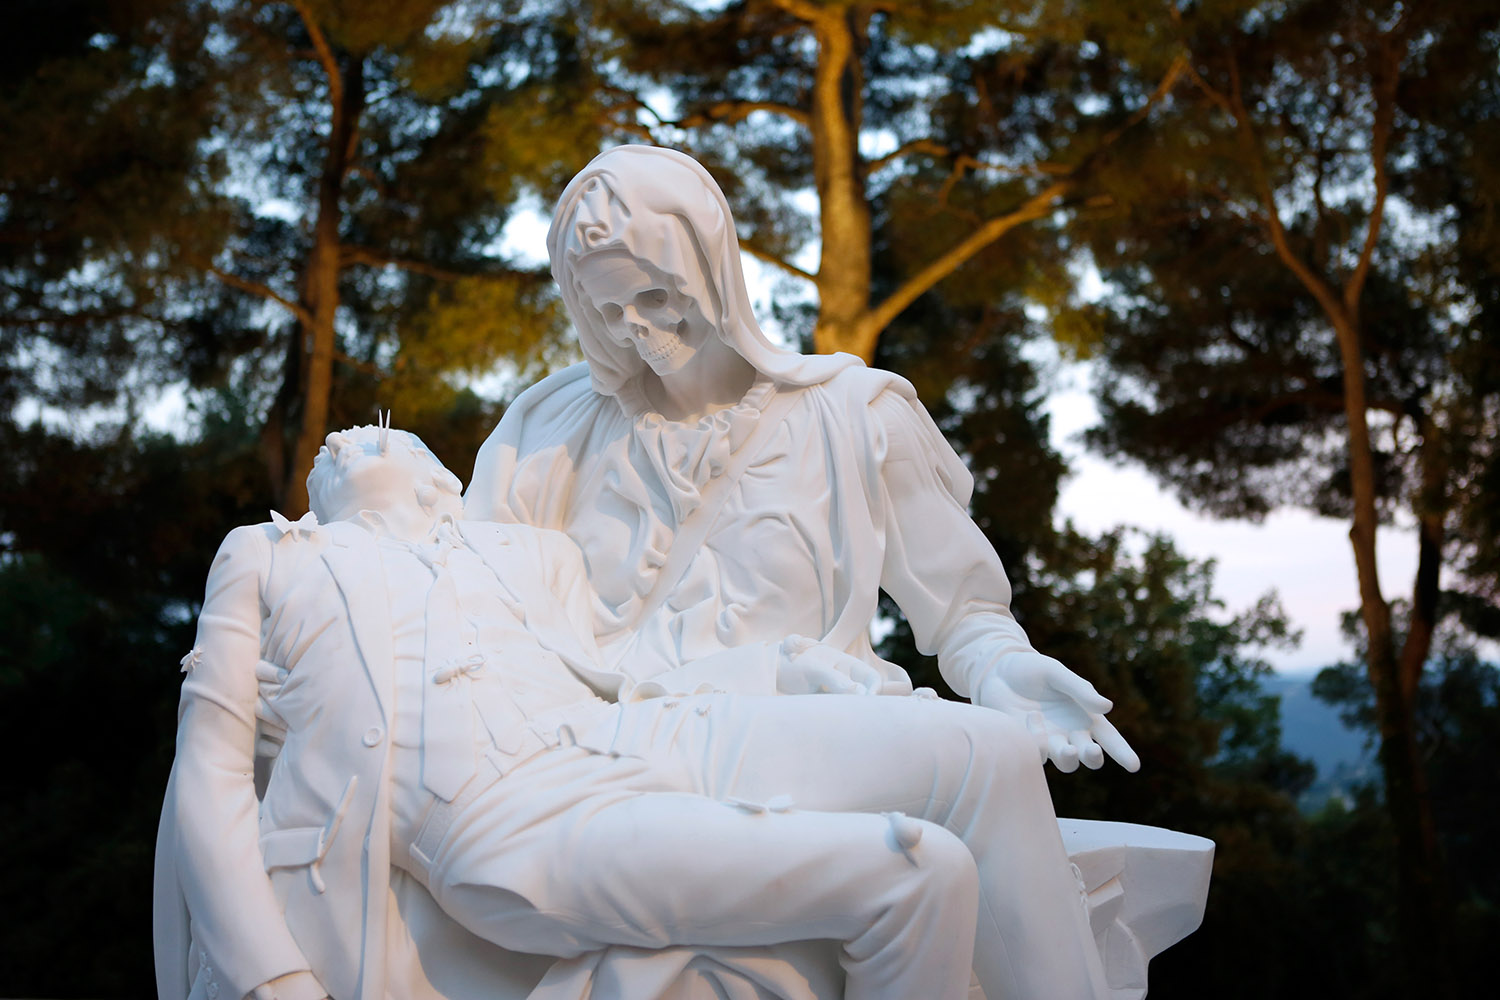 La « Pieta » de Jan Fabre, dans les jardins de la Fondation Maeght. Le visage de la pieta est un crâne de squelette, la sculpture est blanche.